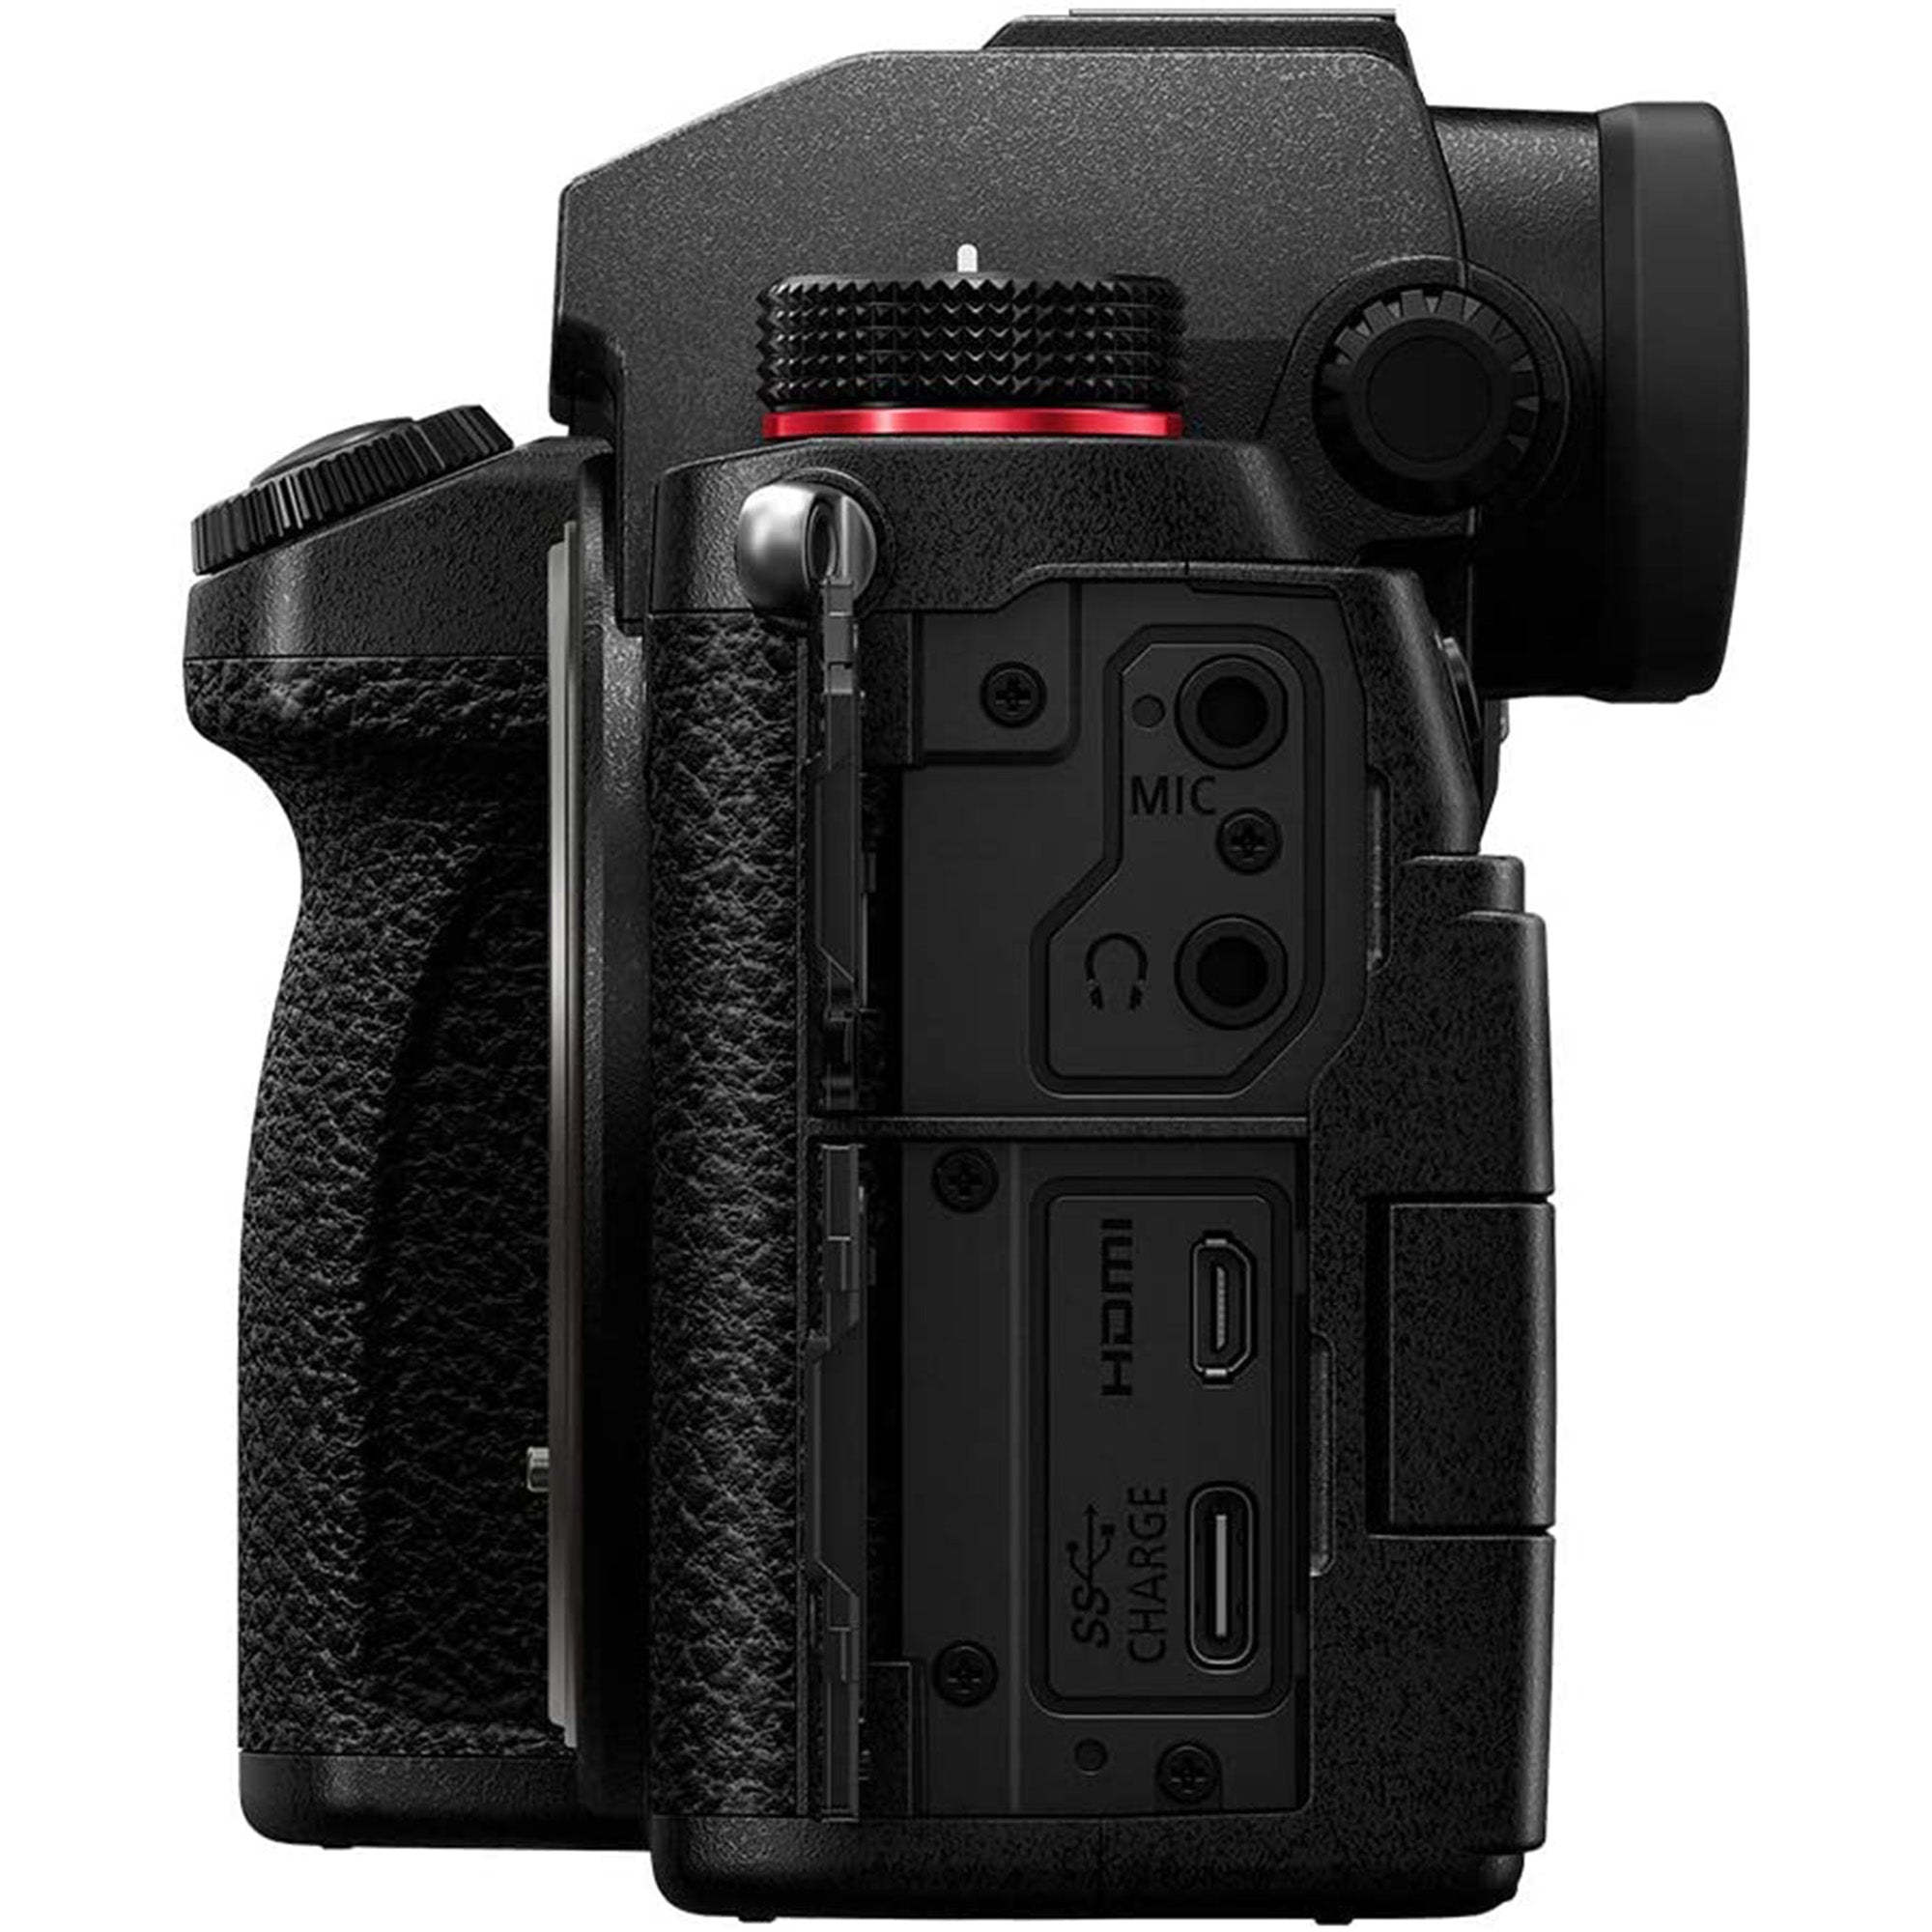 S5 Full Frame Mirrorless Camera + 20-60mm F3.5-5.6 Lens